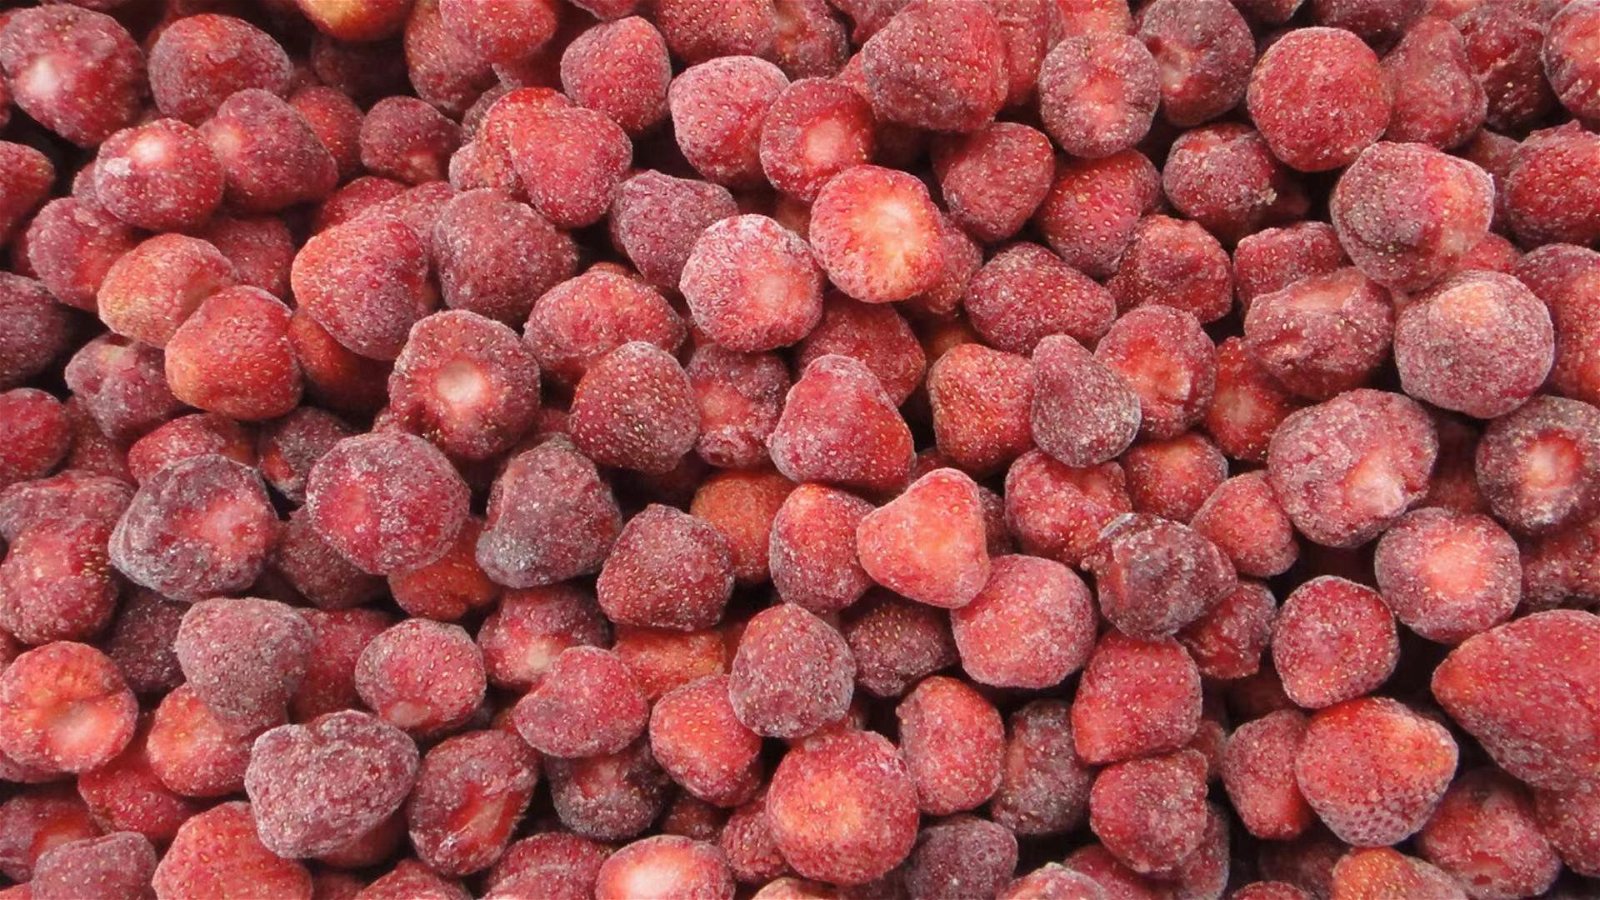 冷凍草莓,速凍草莓,冷凍草莓泥,速凍草莓泥 2